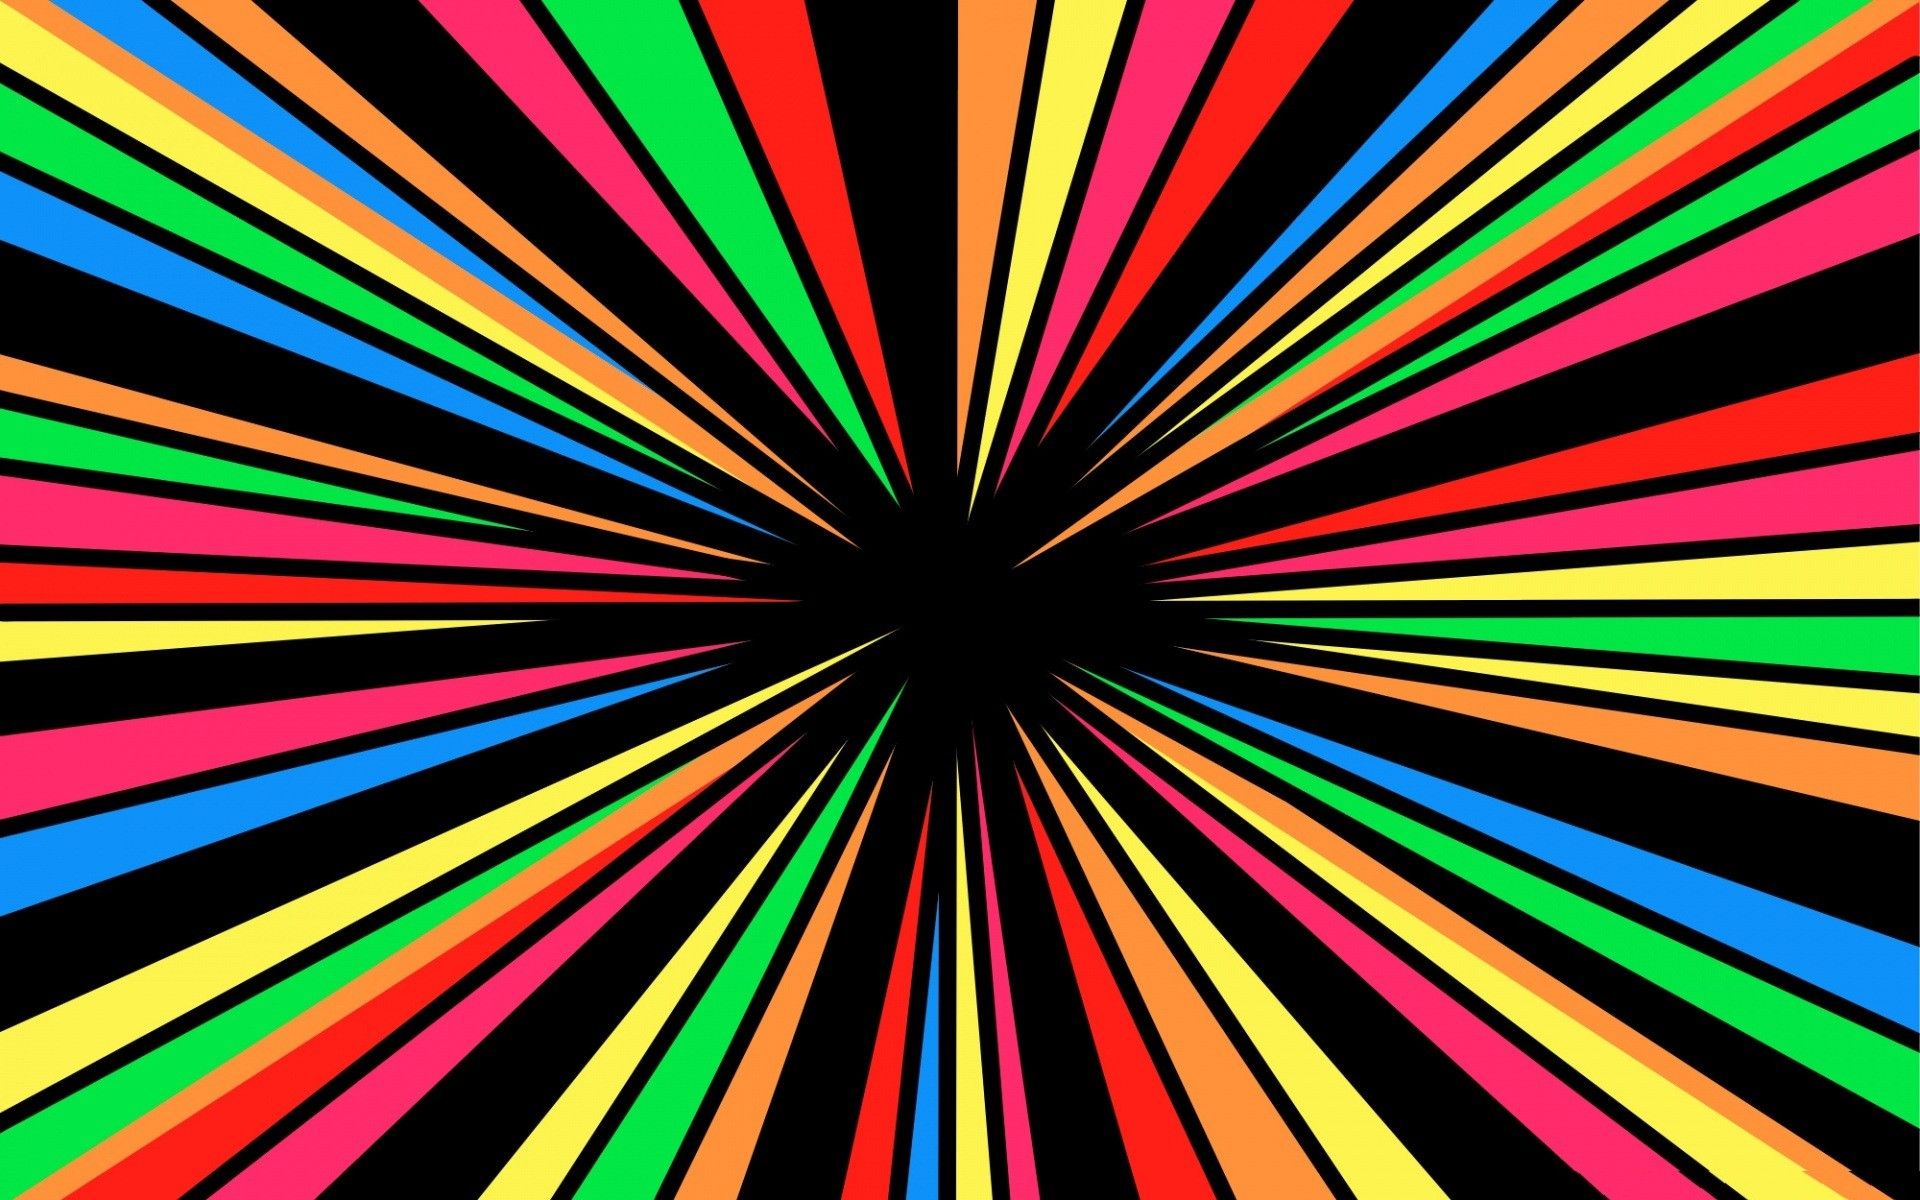 Free Abstract Rainbow Image at Abstract Monodomo